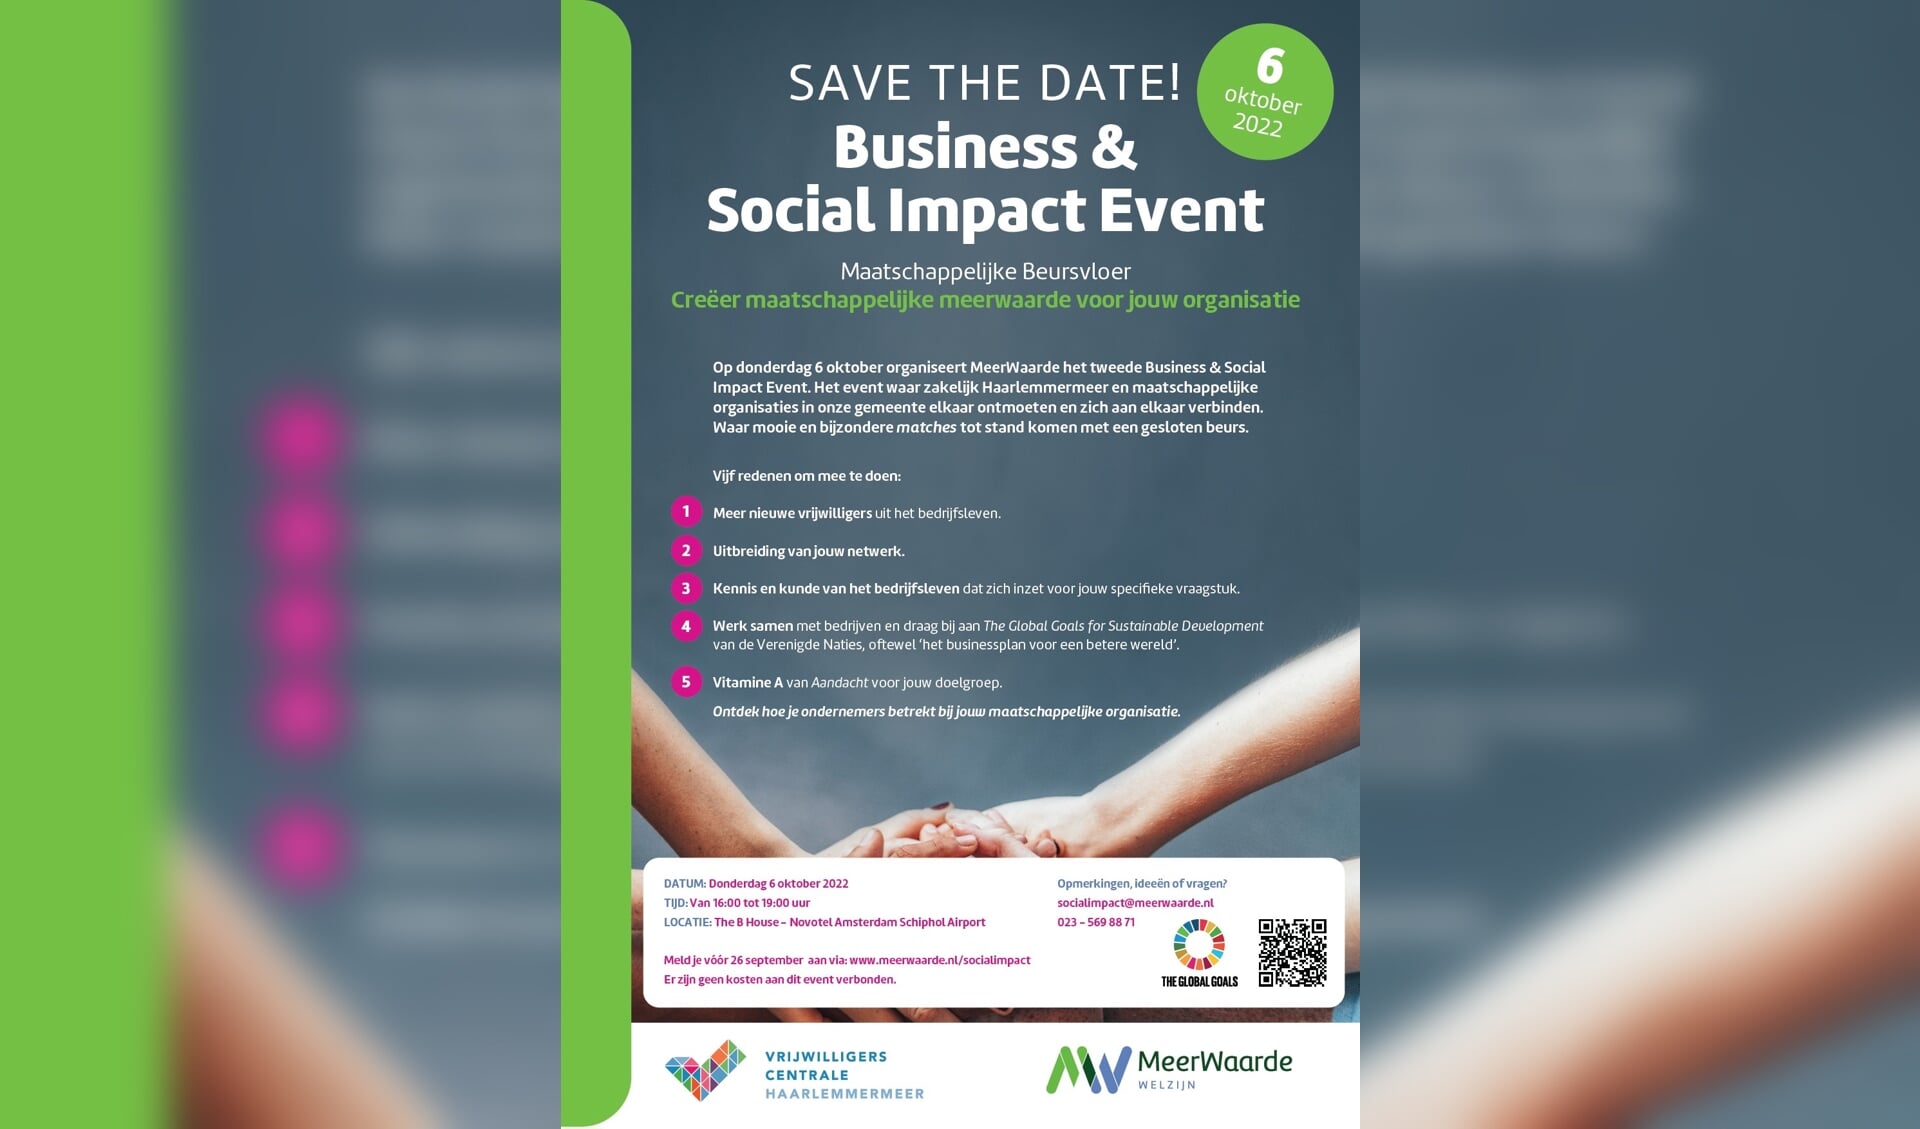 Business & Social Impact Event - Maatschappelijke Beursvloer